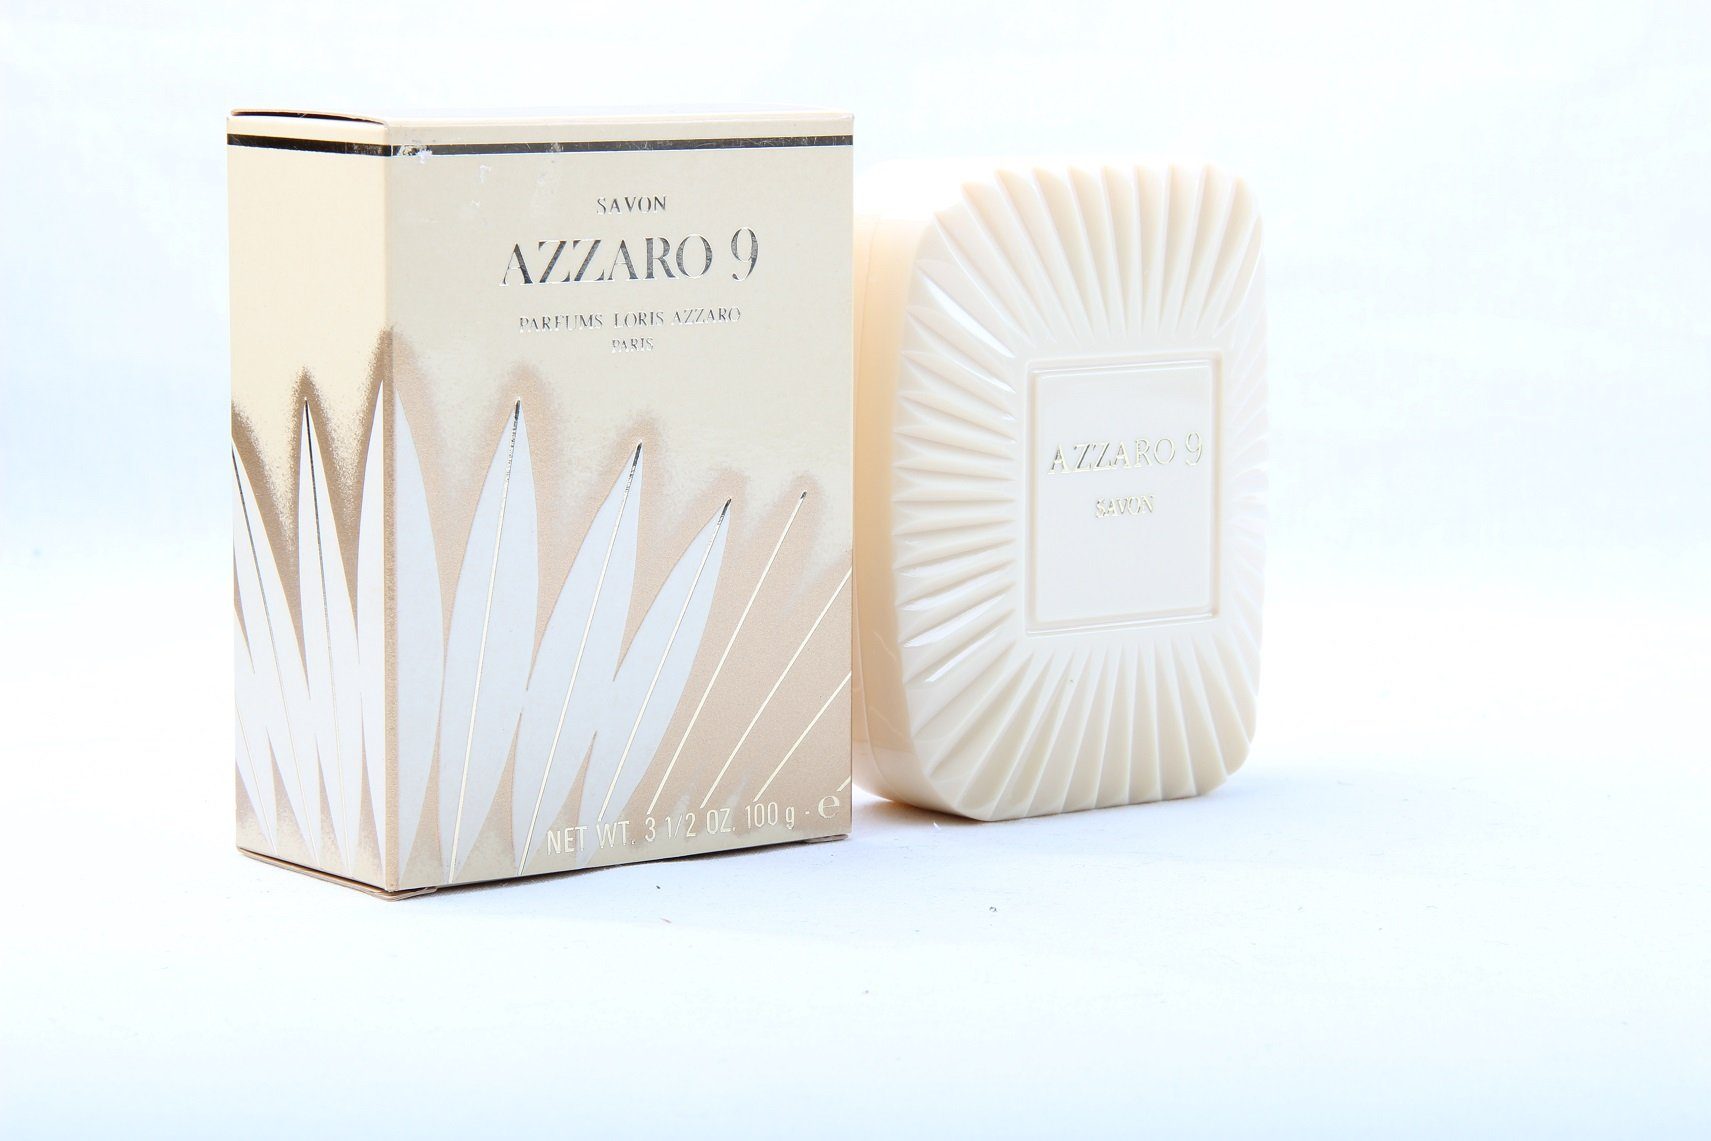 Tiziana Terenzi Handseife Loris Azzaro AZZARO 9 Perfumed 100g